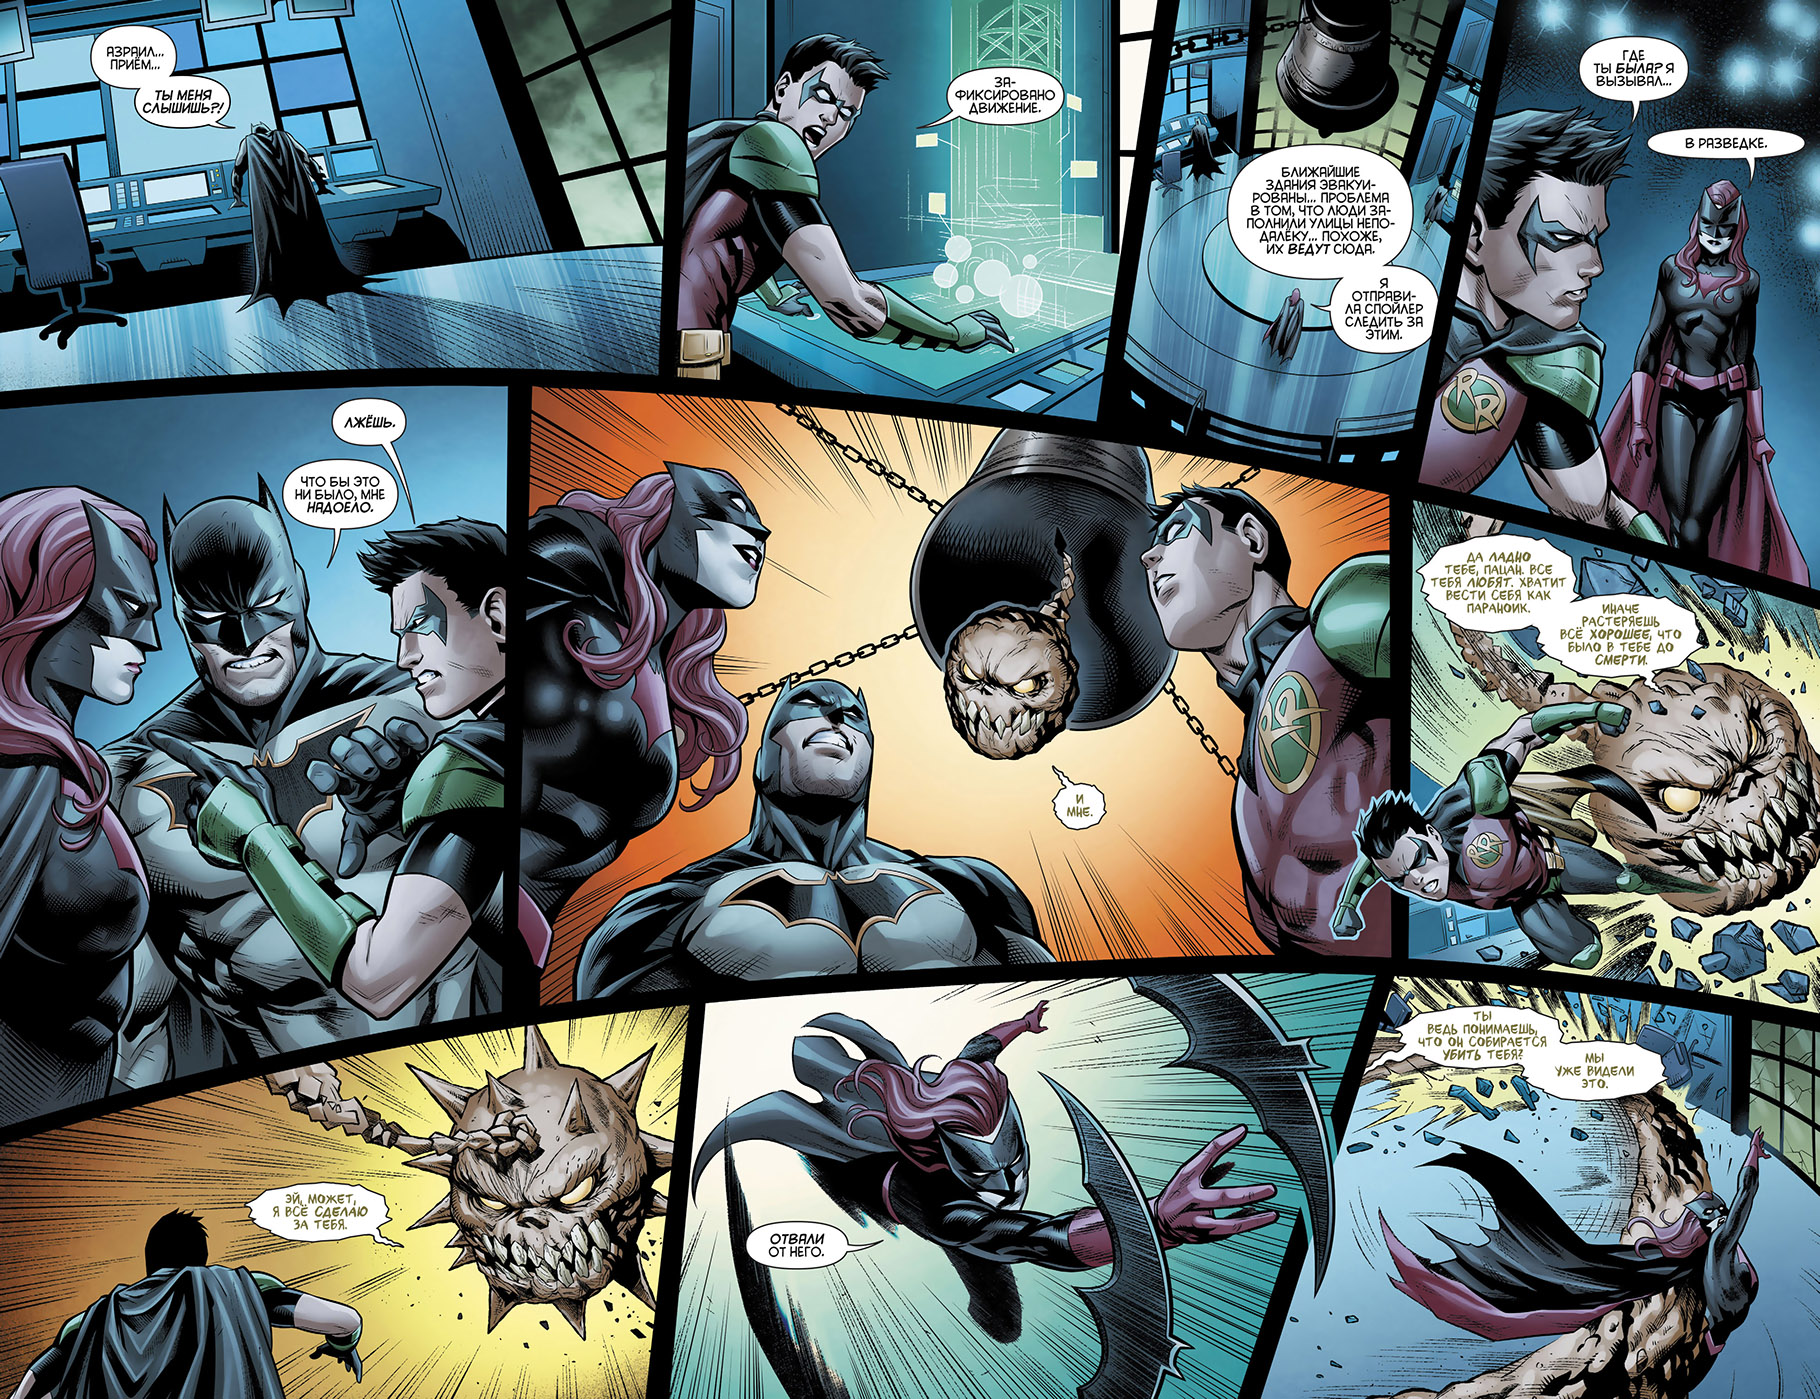 Страница комикса. Комиксы о Бэтмене. Страница из комикса. Комиксы Бэтмен страницы. Страницы комиксов про супергероев.